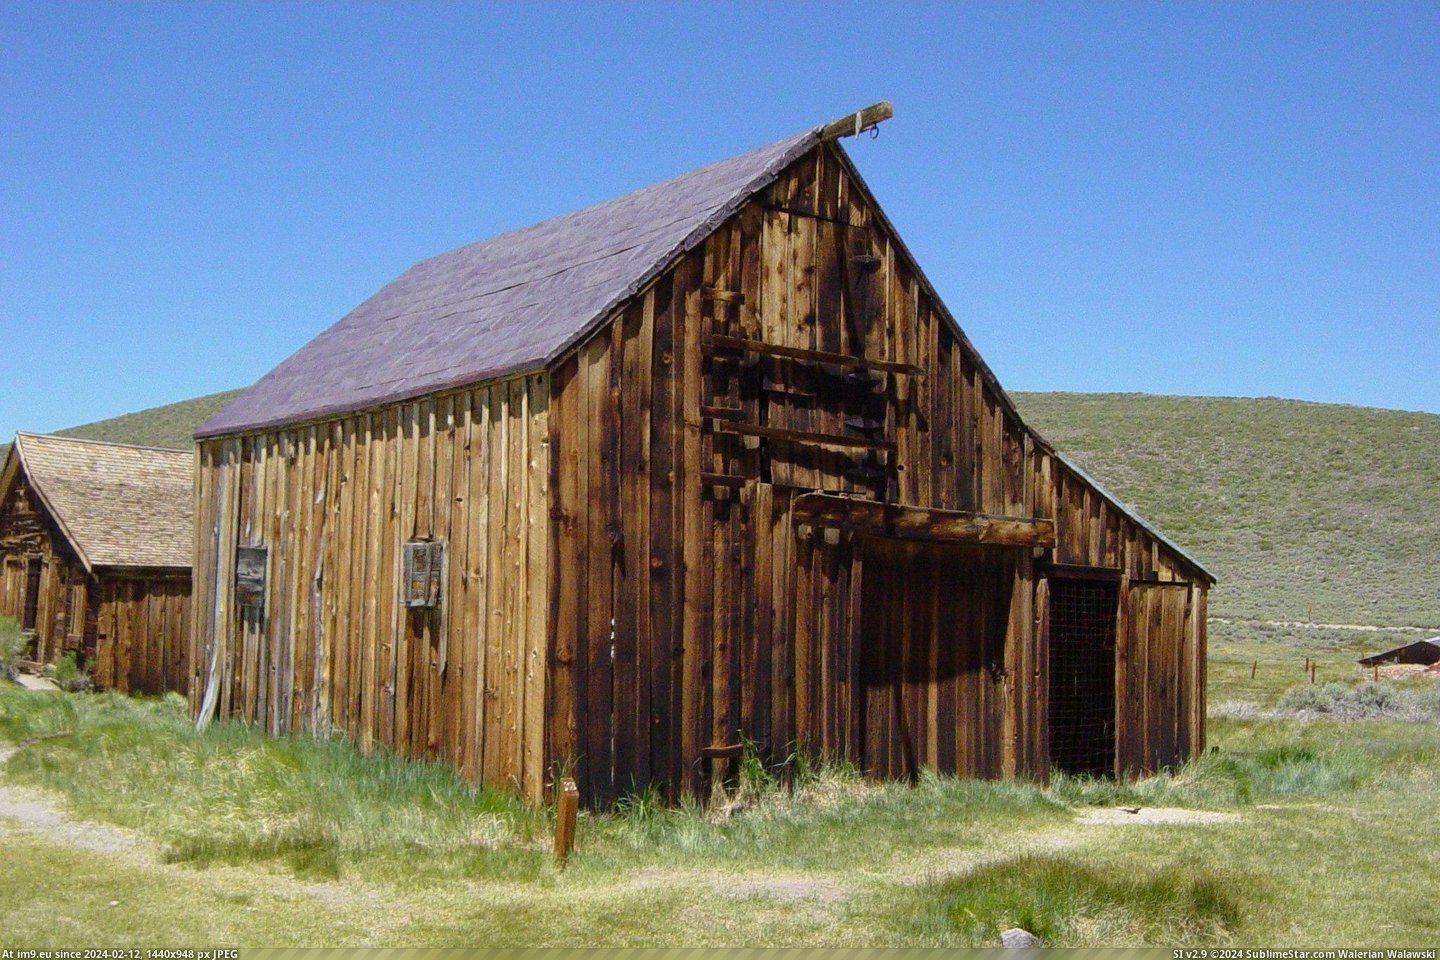 #California #Kirkwood #Stable #Bodie Kirkwood Stable In Bodie, California Pic. (Bild von album Bodie - a ghost town in Eastern California))